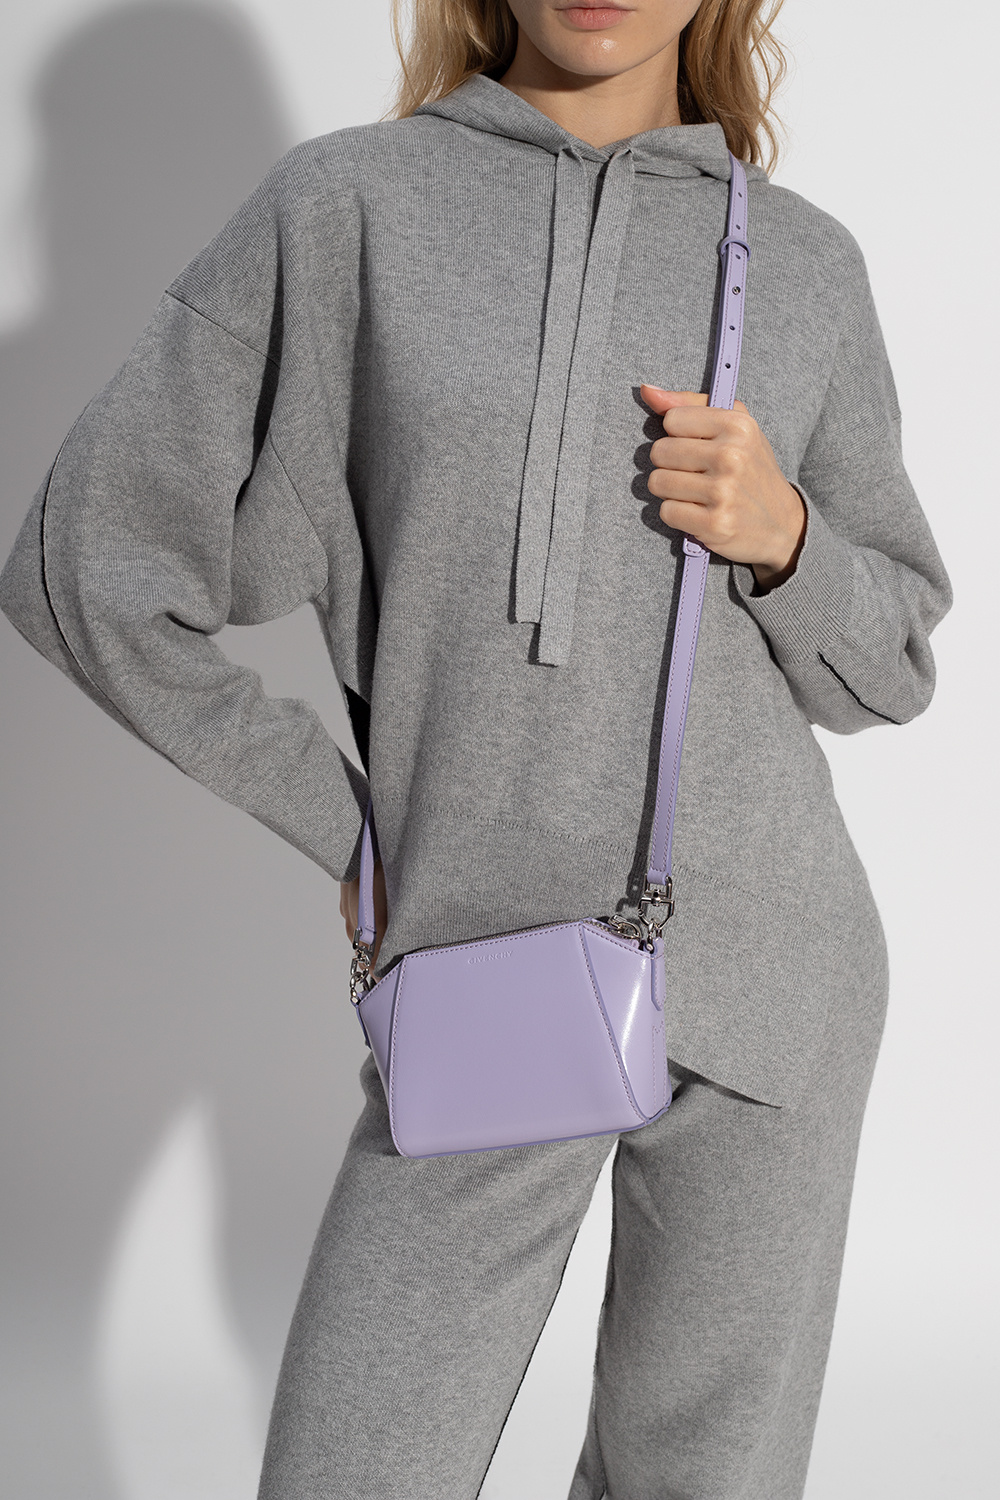 Givenchy Antigona Nano Crossbody Bag in Calf Leather